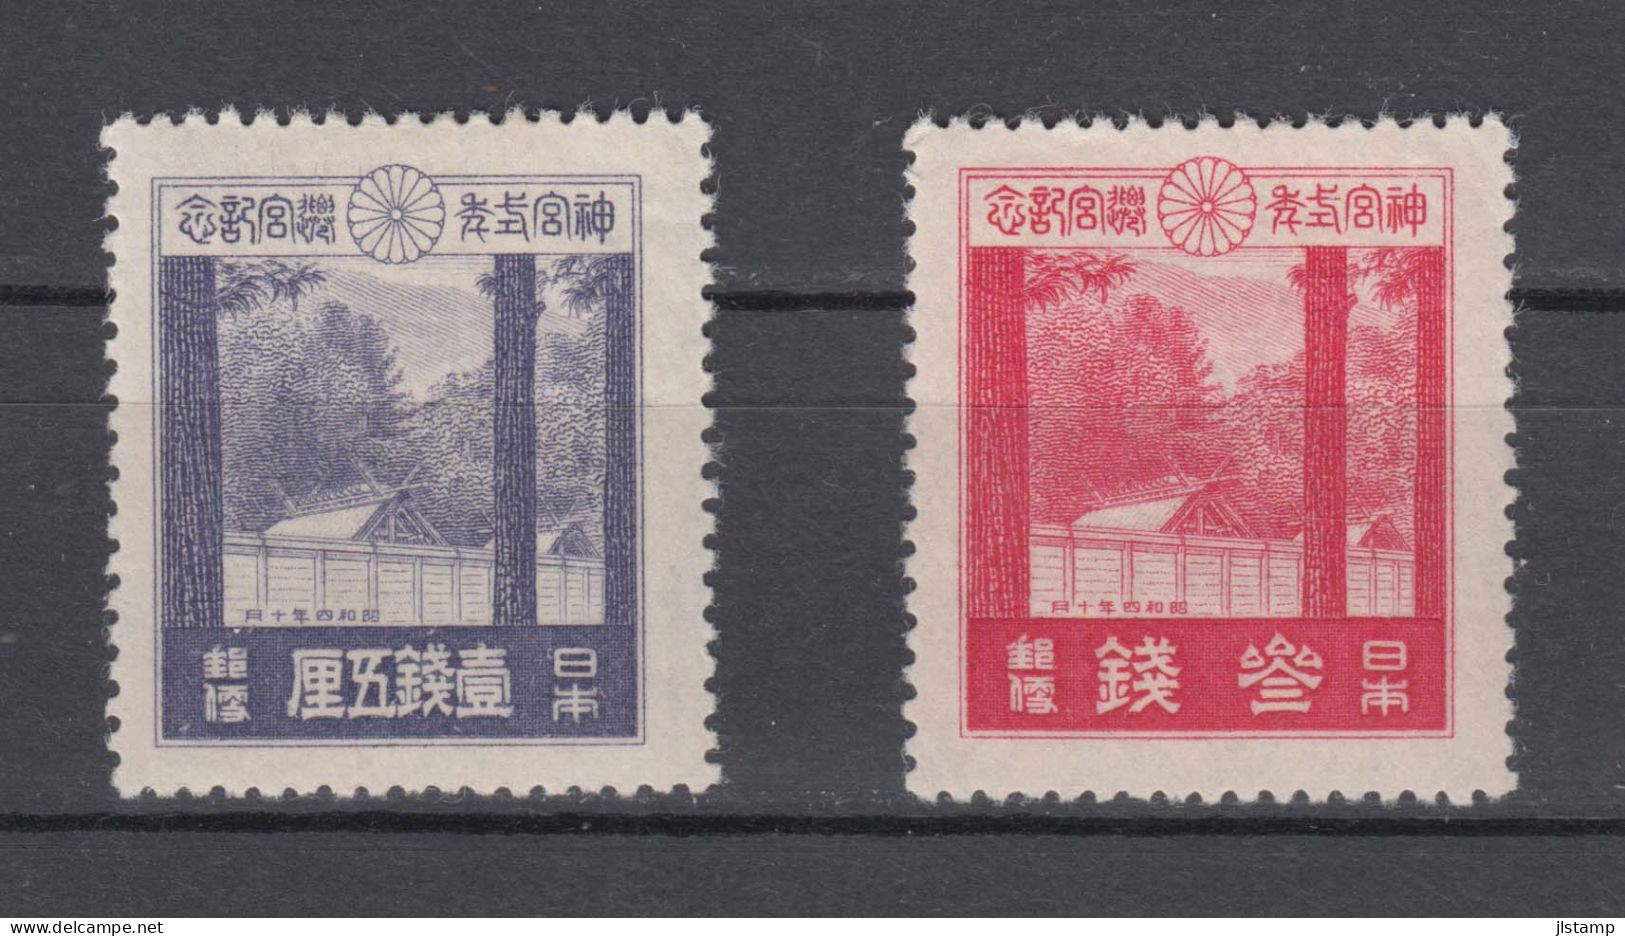 Japan 1929 Ise Shrines Stamps Set Of 2 ,Scott# 206-207,OG MH,VF - Ungebraucht